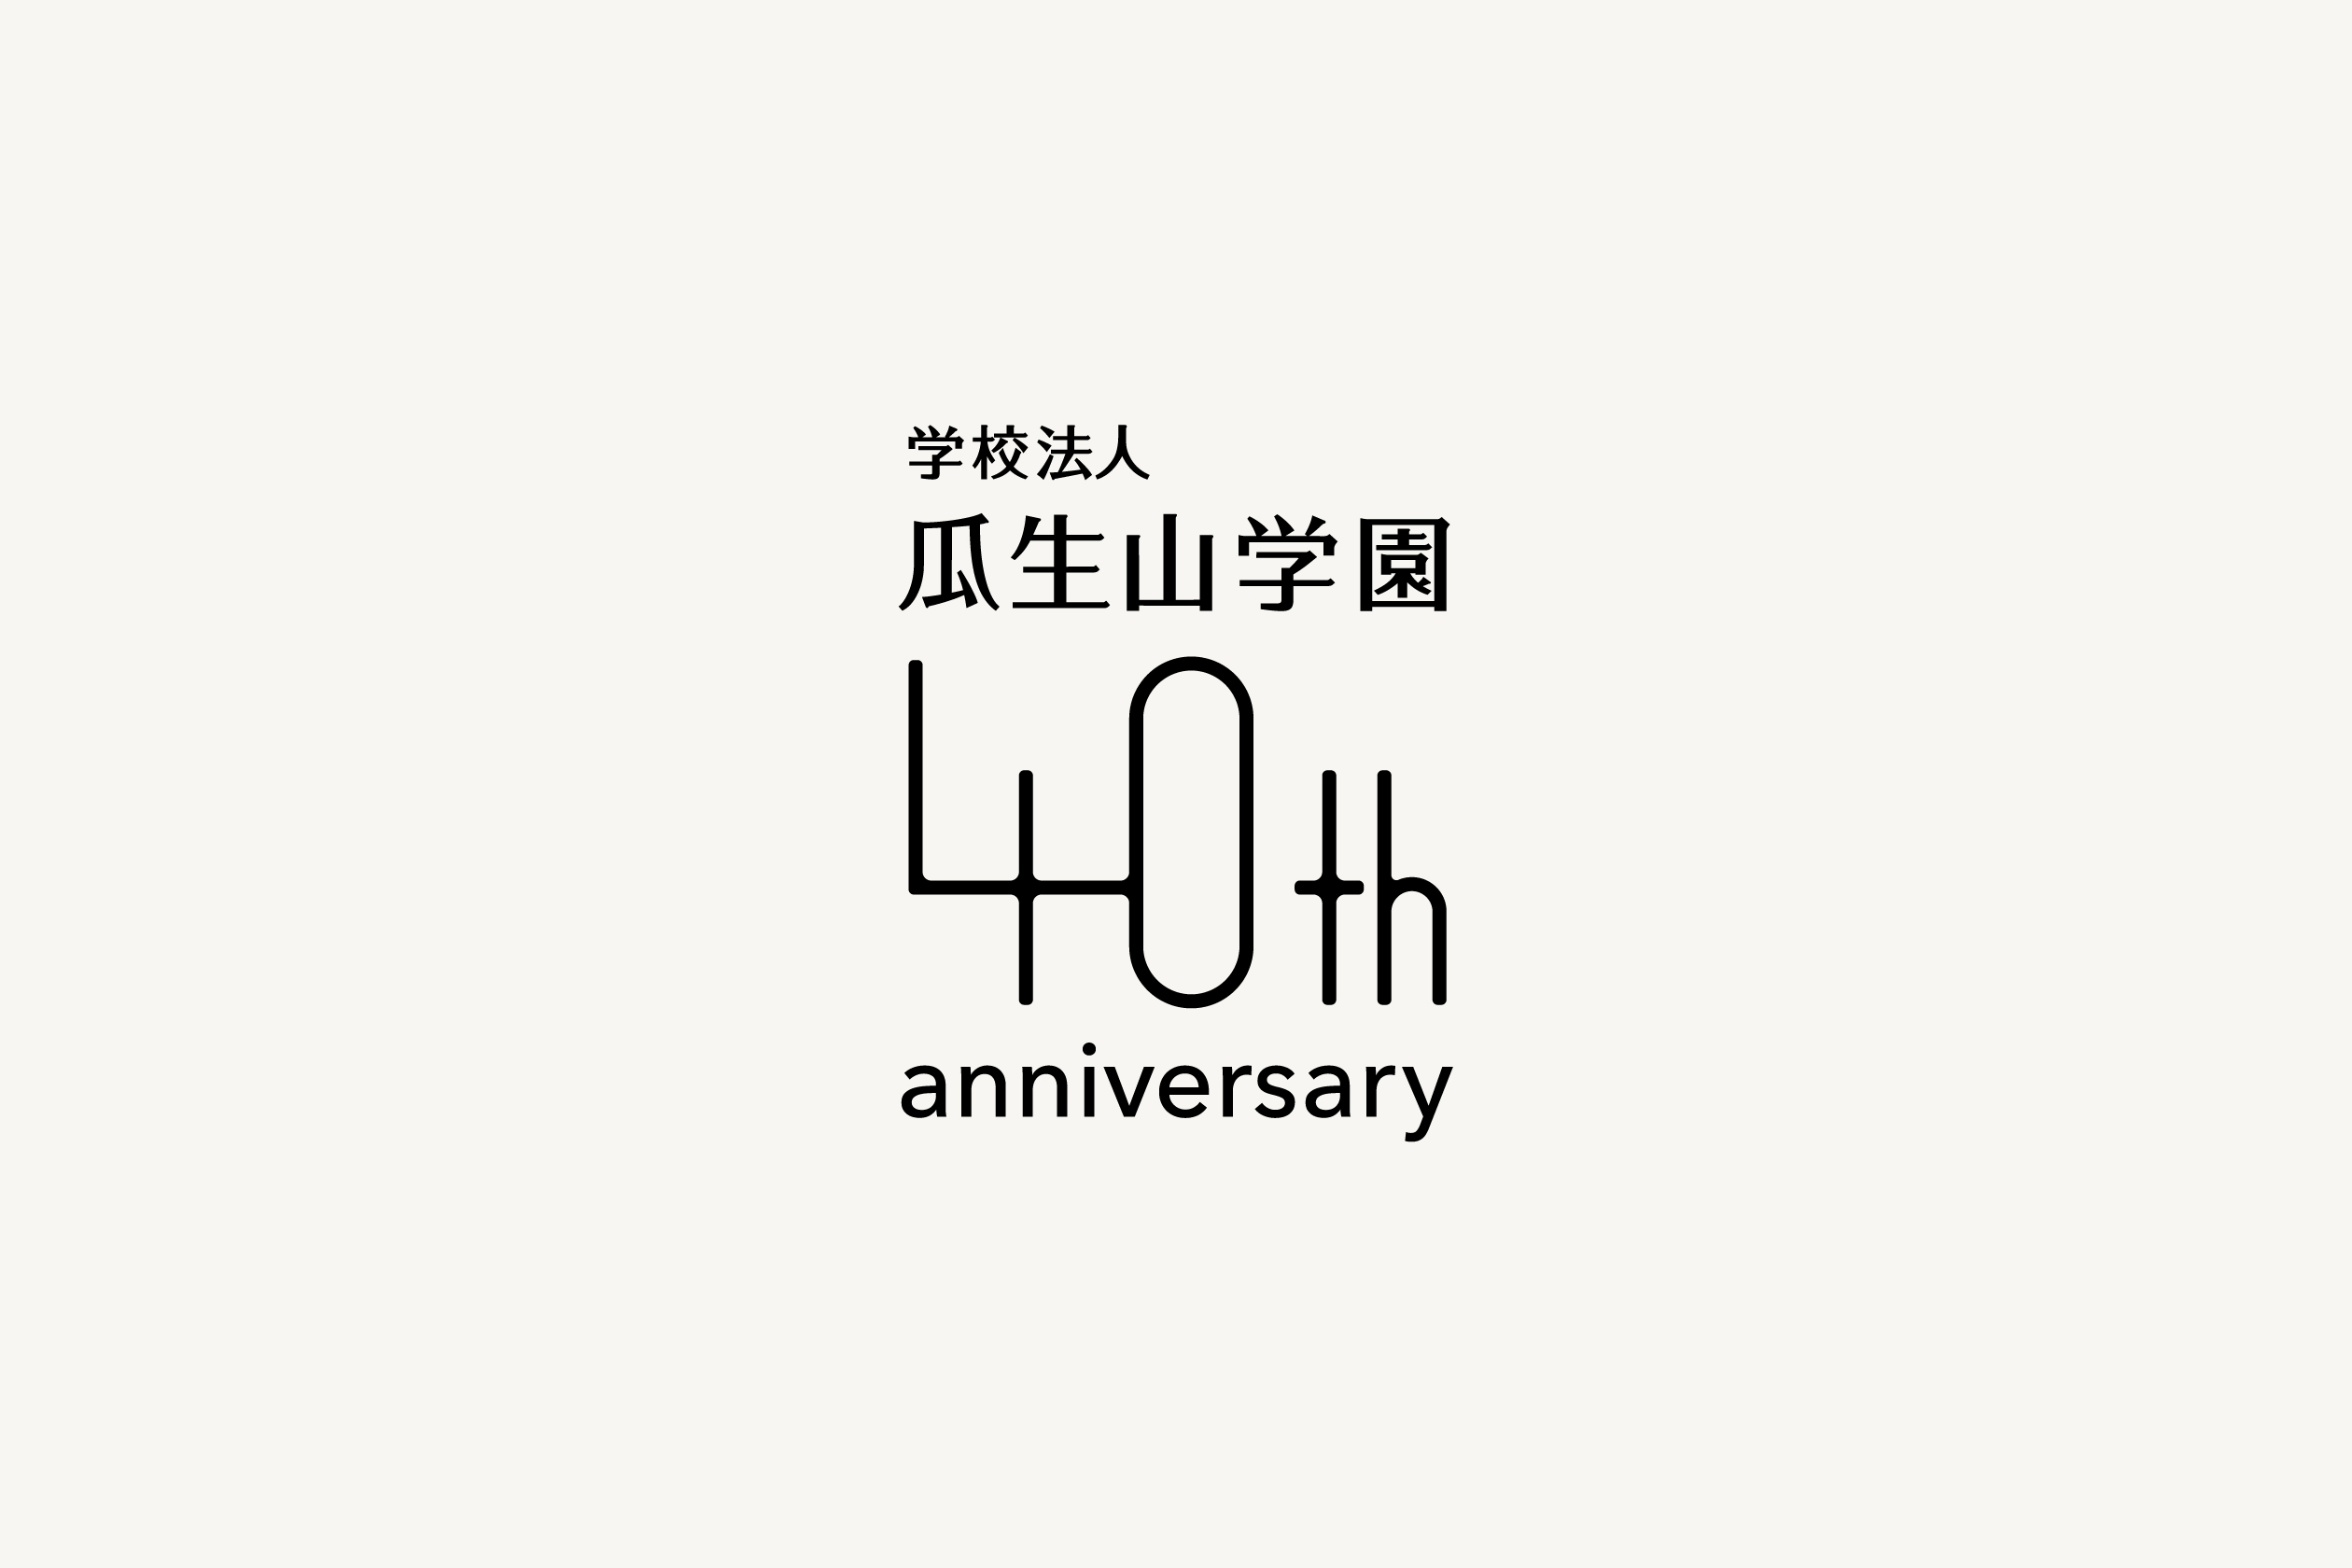 瓜生山学園40周年記念ロゴ 丸井栄二デザイン室